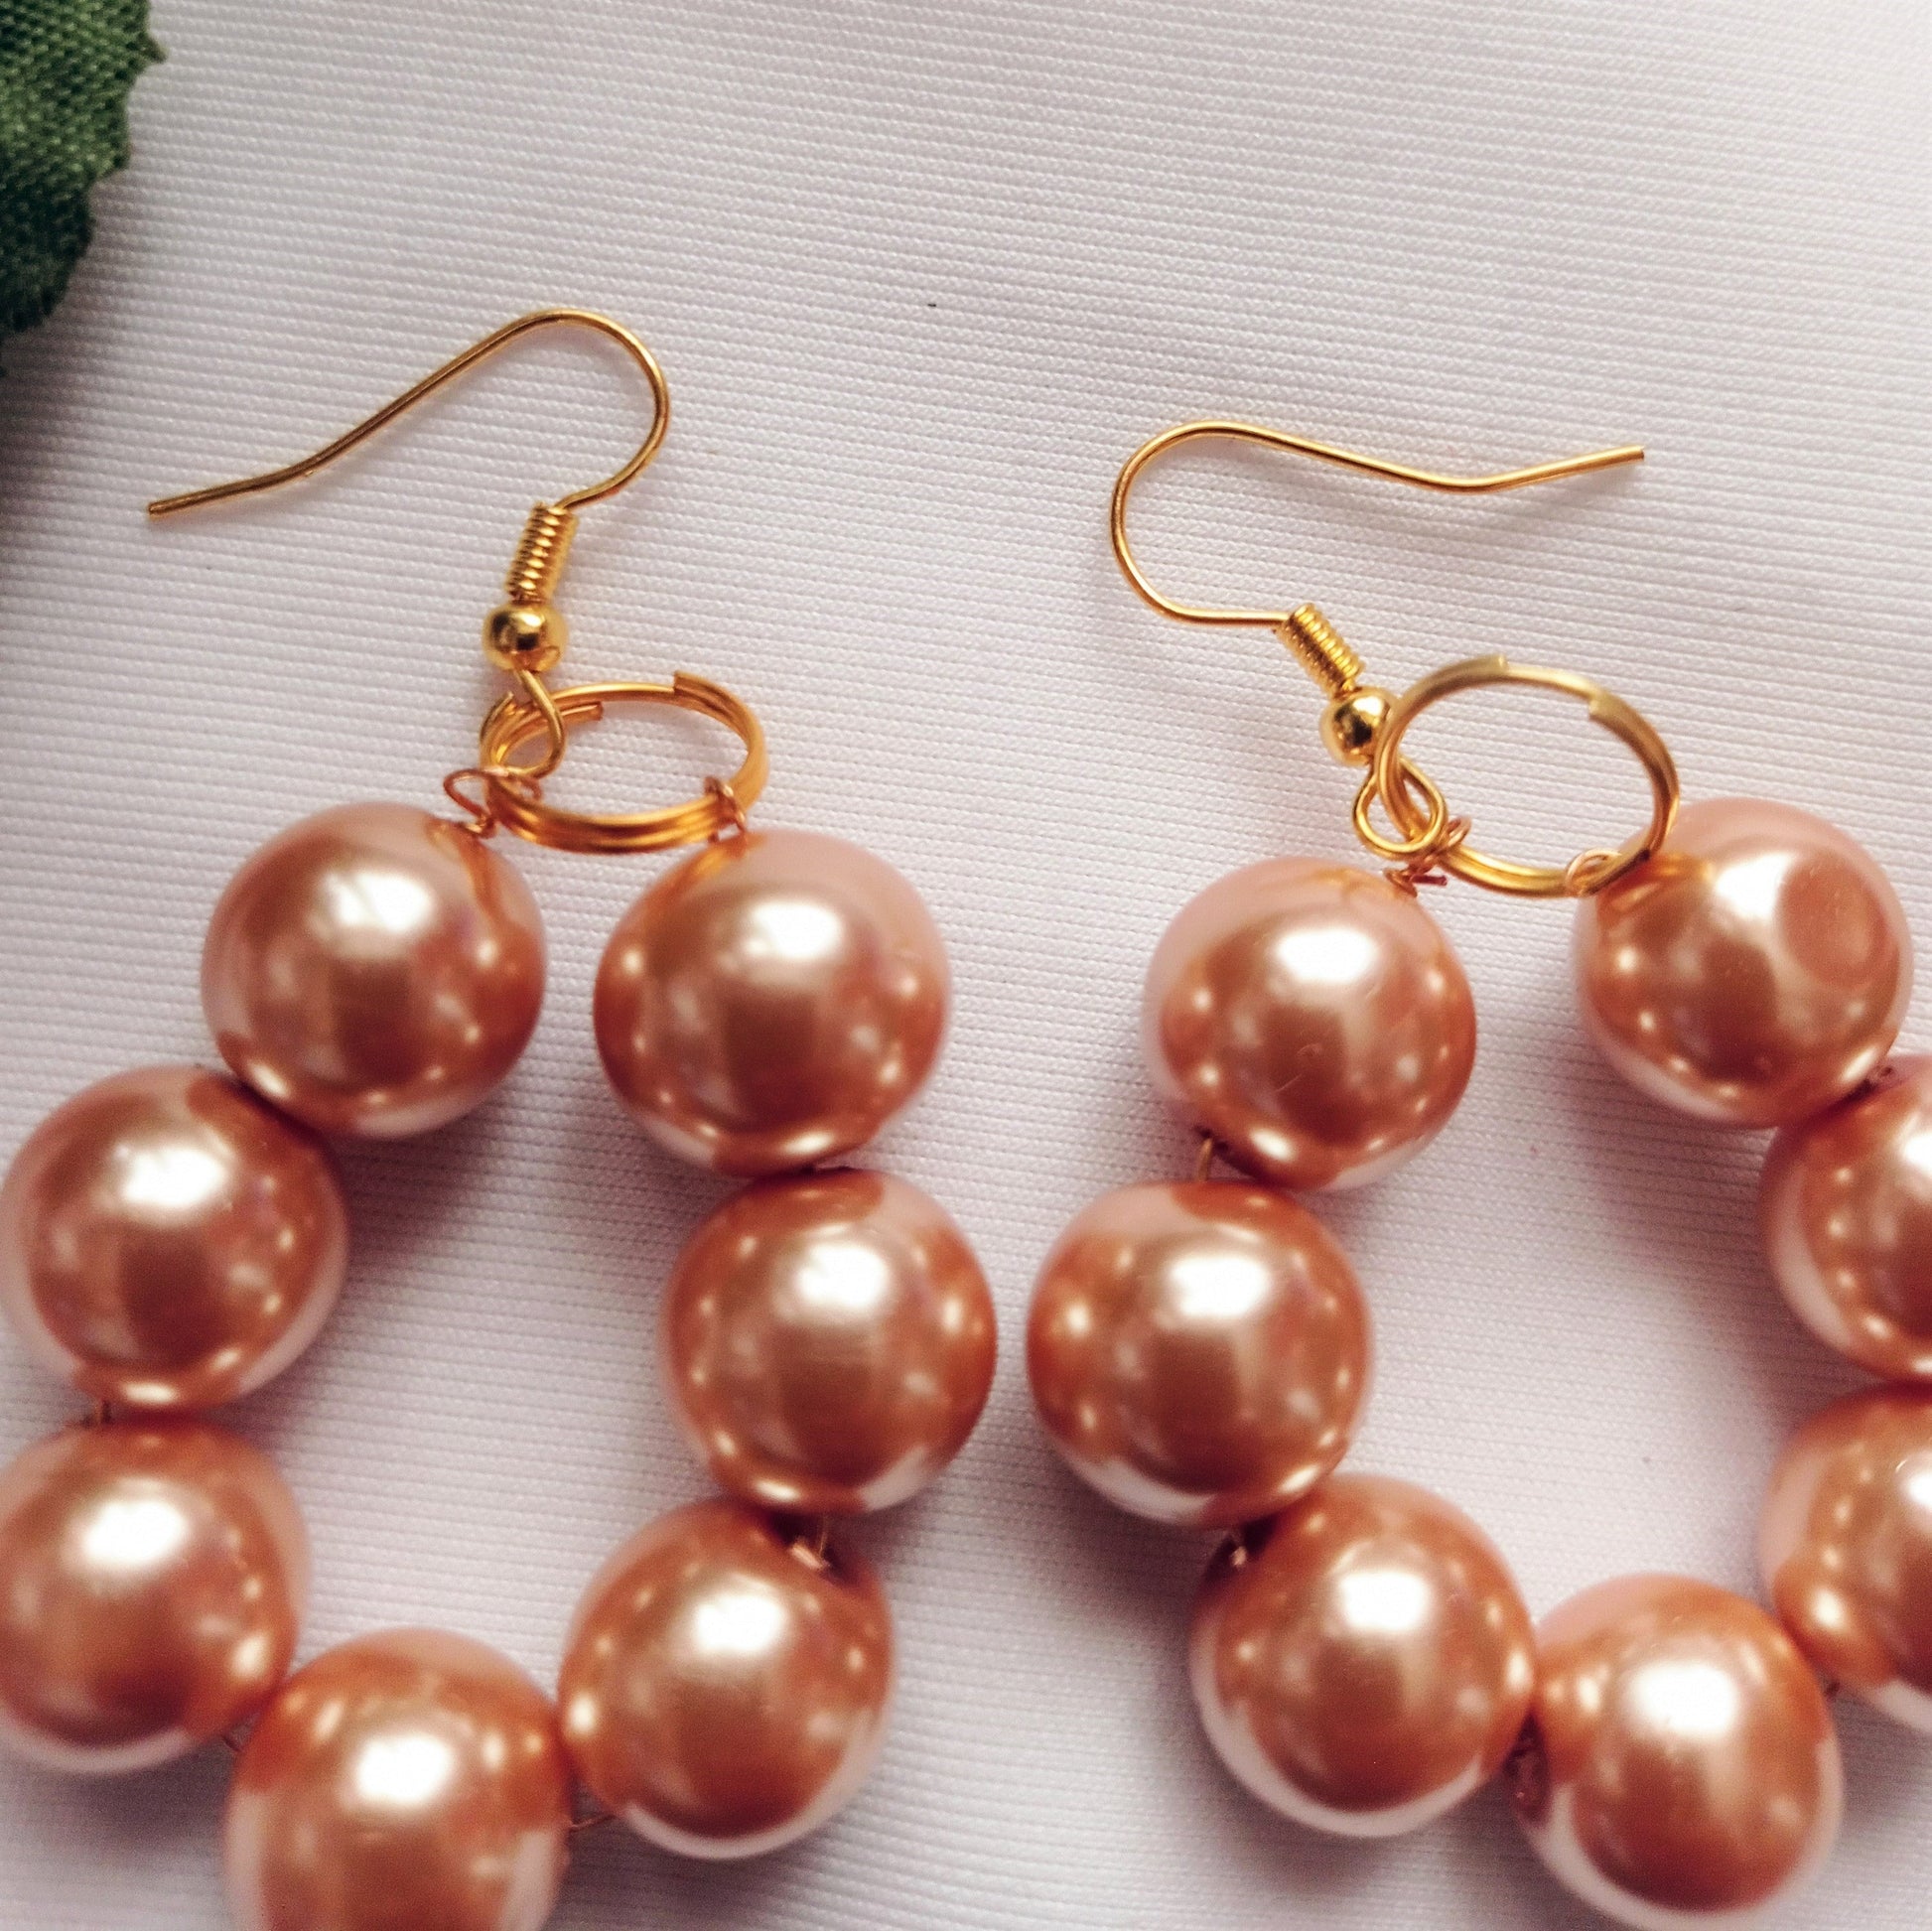 Bronze Glass Pearl Earrings, Glass Pearl Jewelry, Unique Earrings | by lovedbynlanla-5